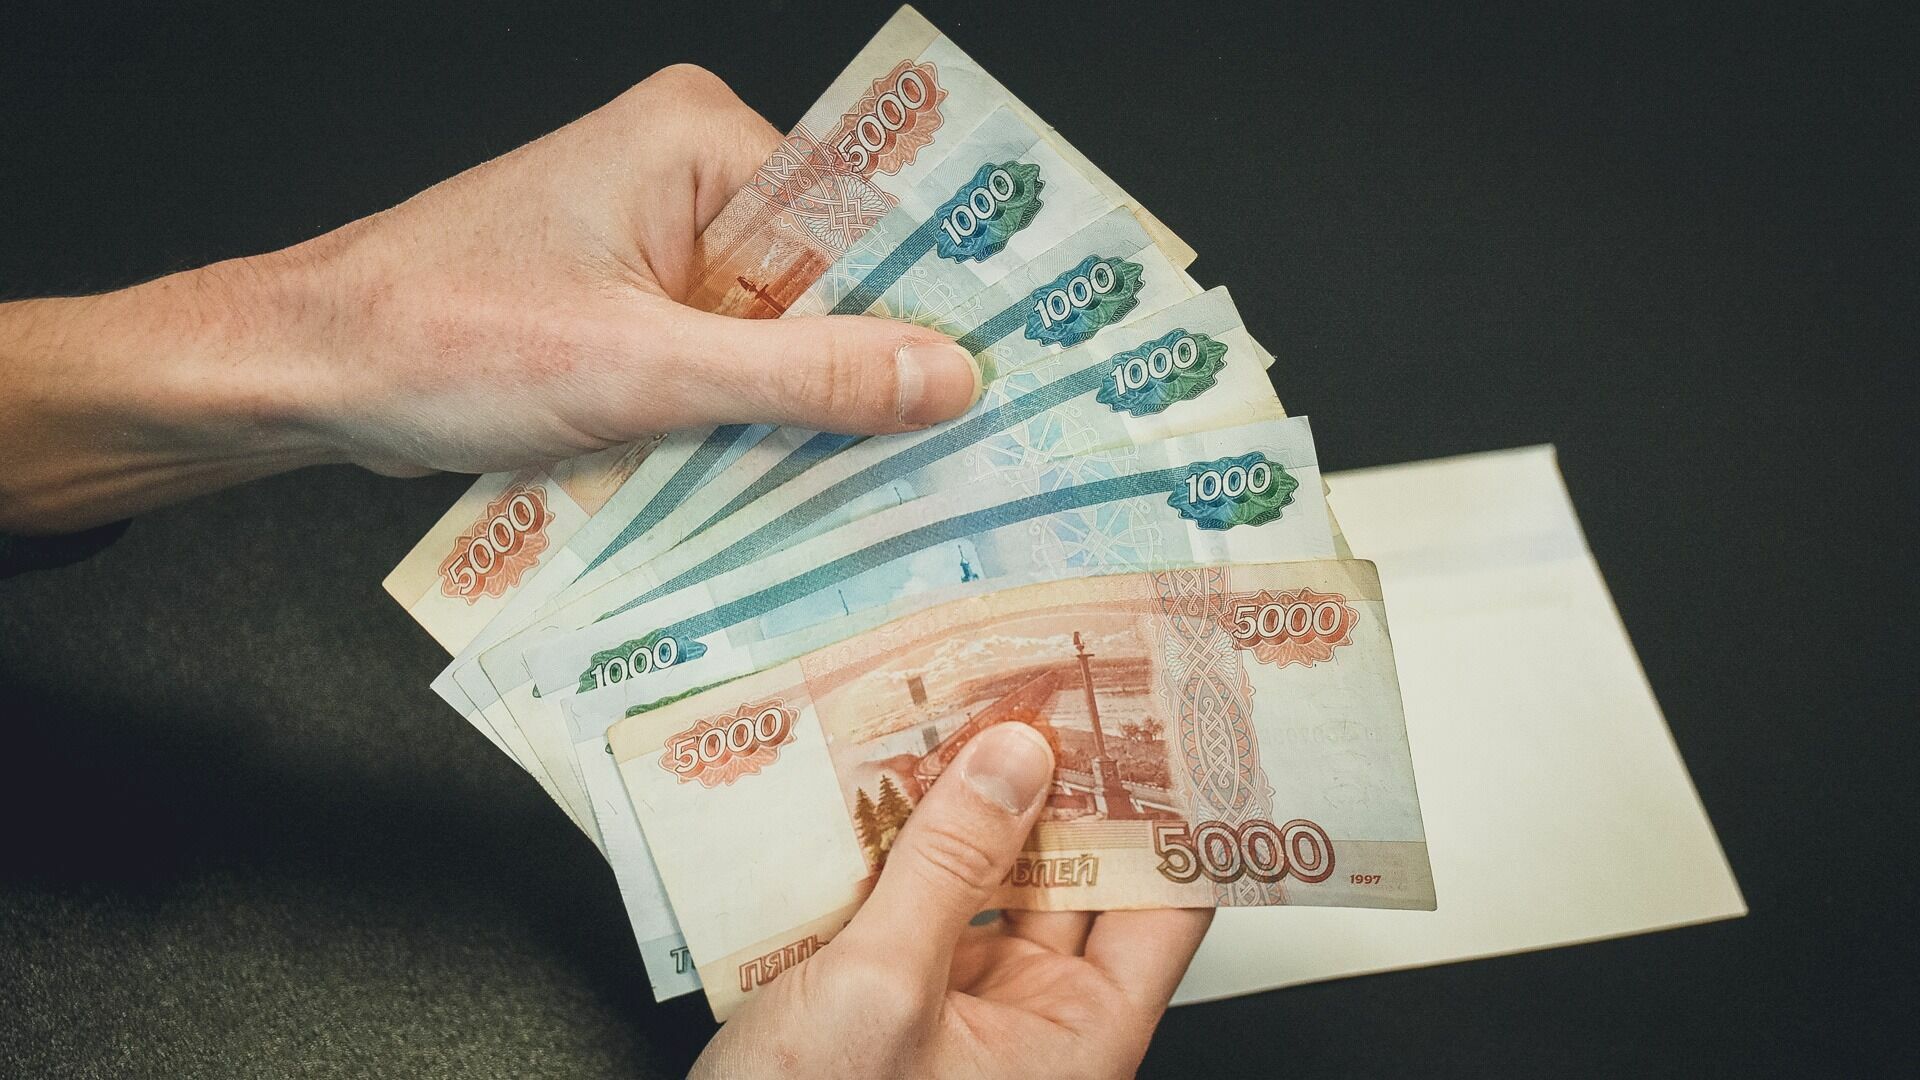 И не надейтесь: зарплаты в Удмуртии достигнут 100 тысяч рублей только через 15 лет